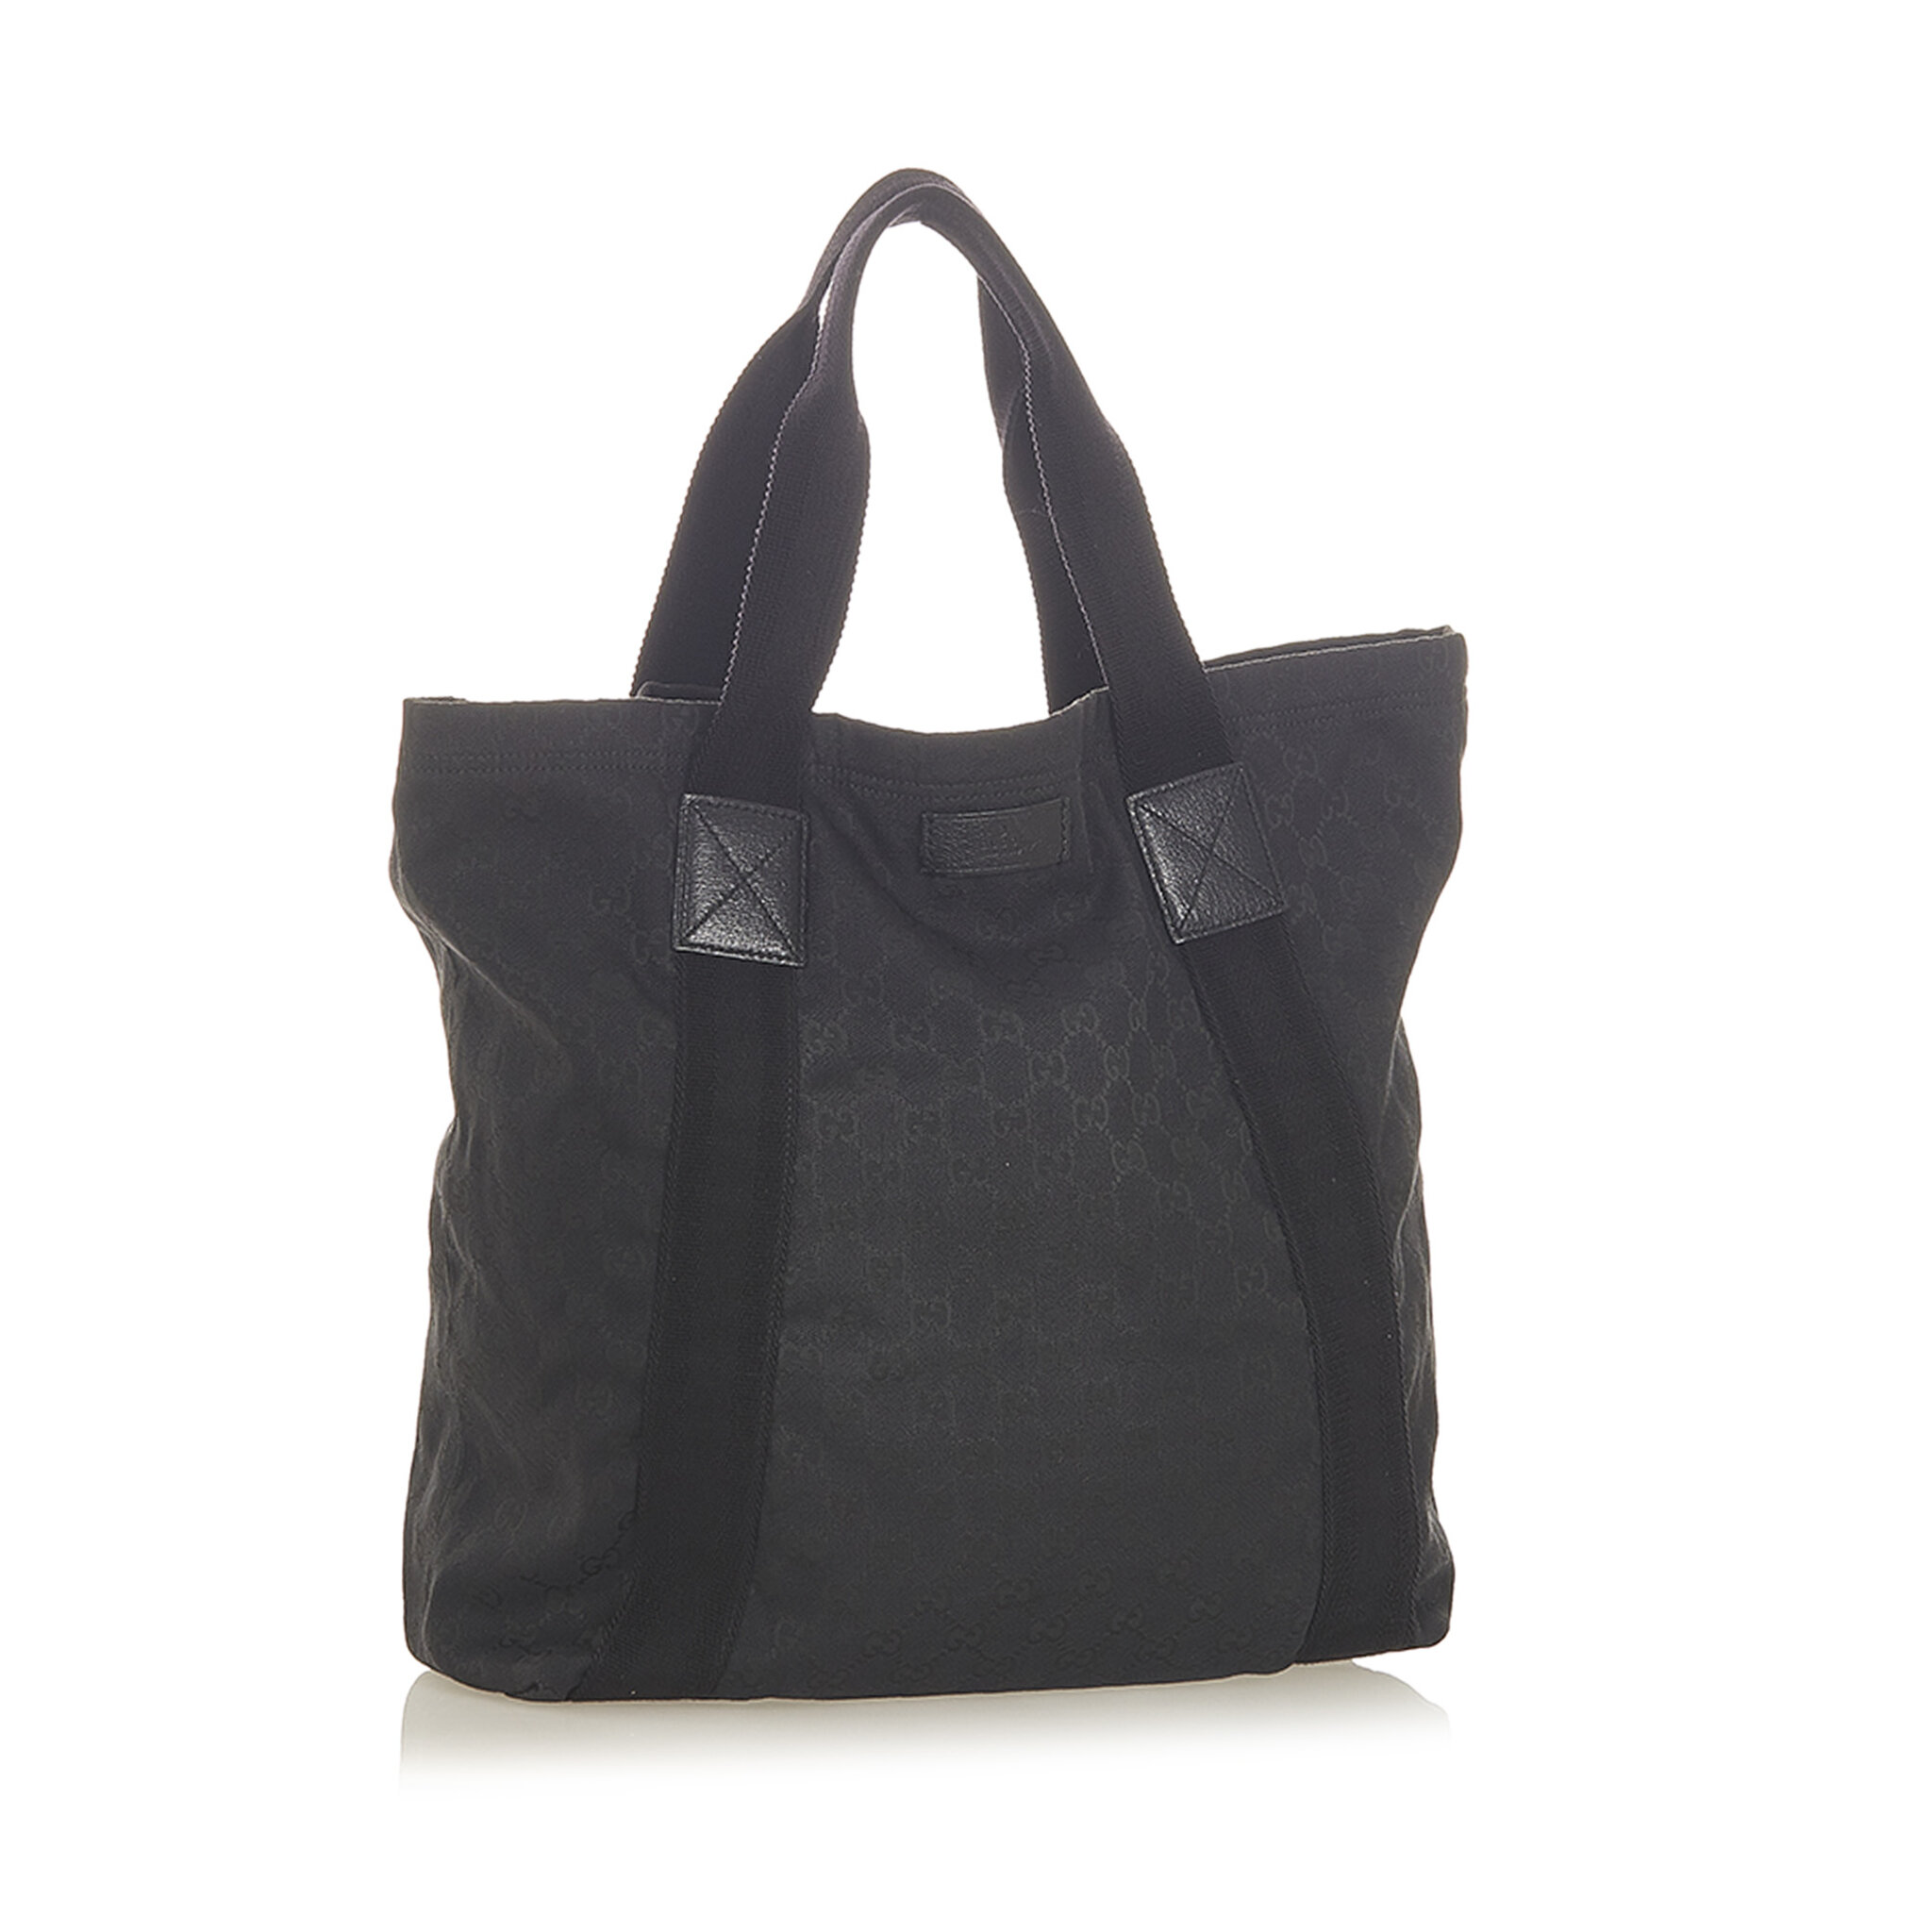 Gucci Gg Canvas Web Tote Bag, black